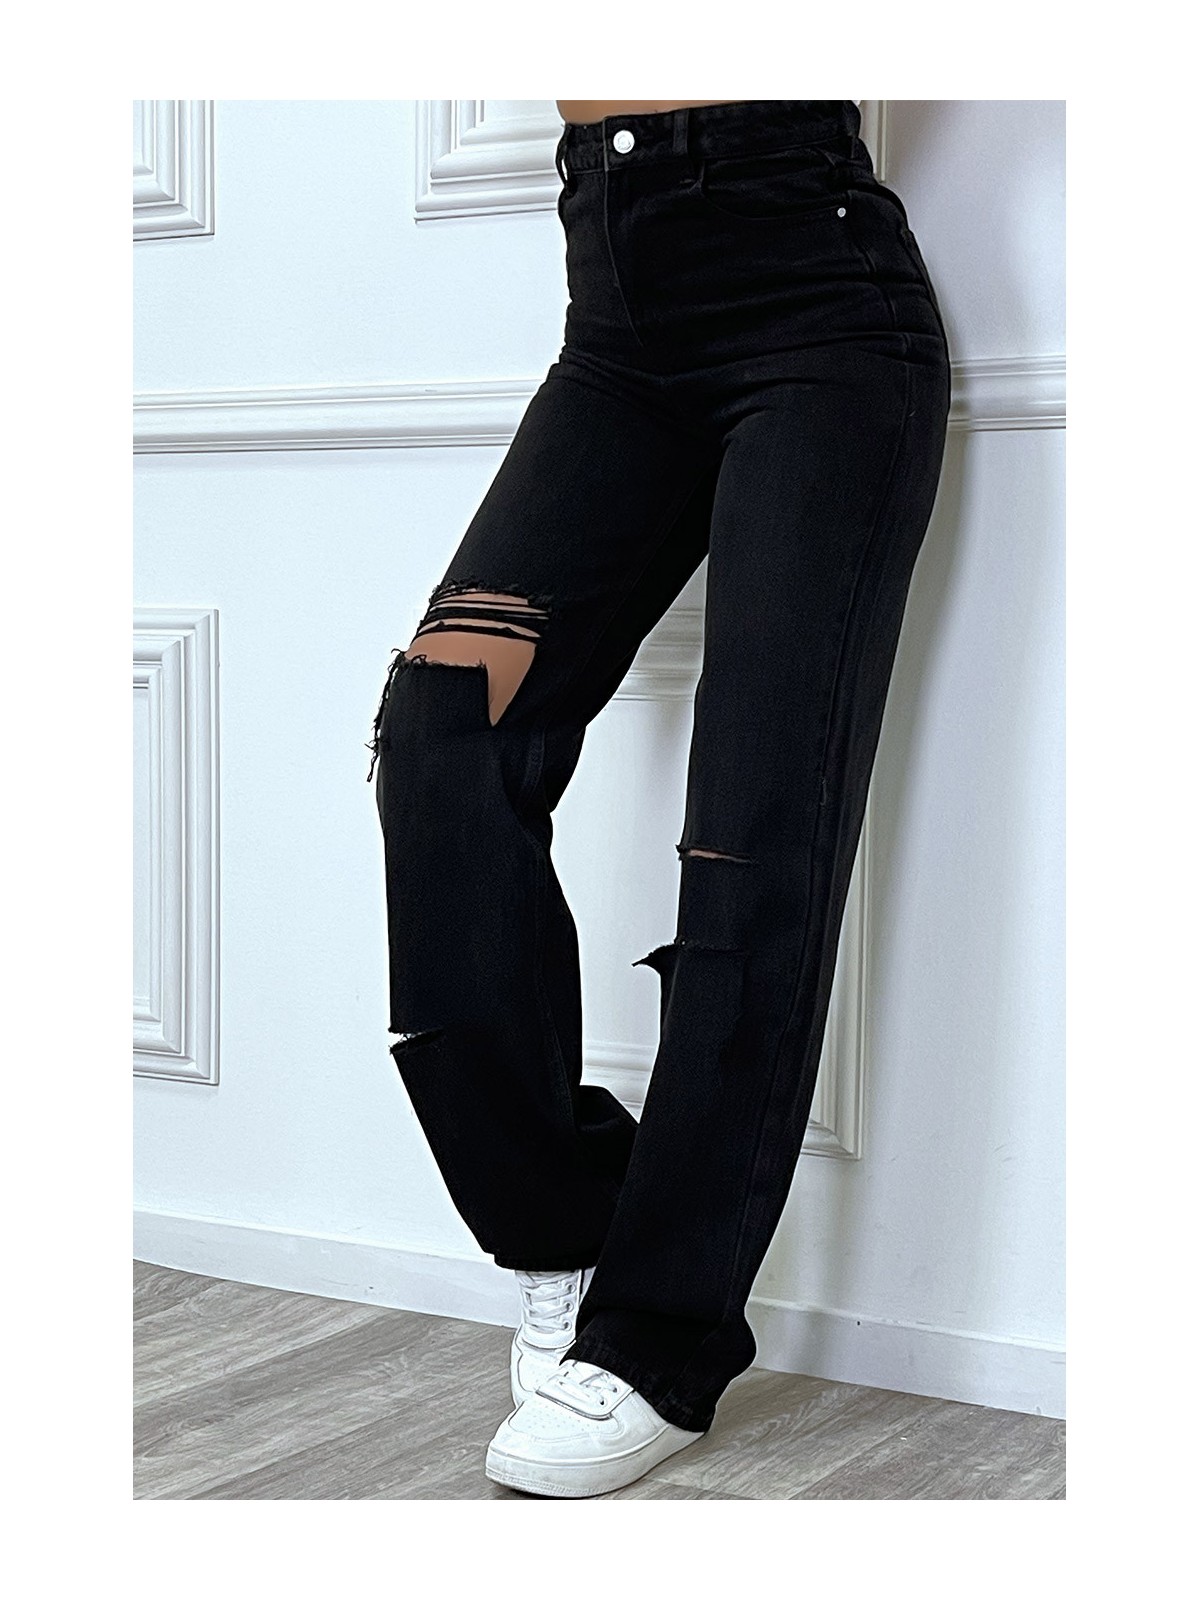 Jeans boot-cut noir taille haute déchiré aux genoux. Jeans hyper tendance 2021 instagram et TikTok - 7